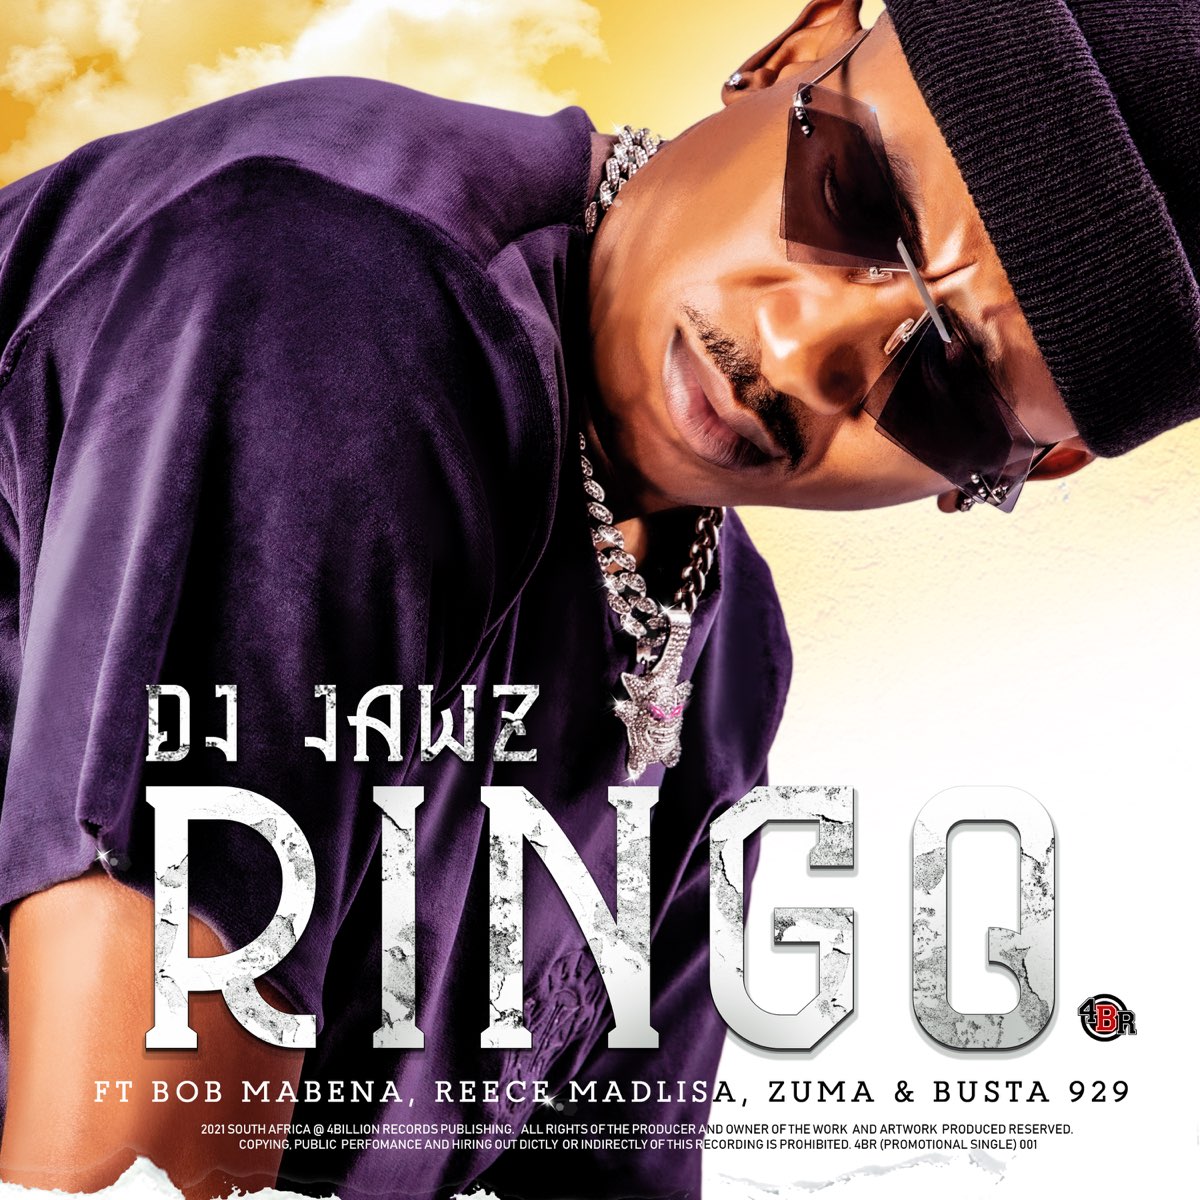 Ringo Feat Bob Mabena Reece Madlisa Zuma Busta 929 Single By Dj Jawz On Apple Music